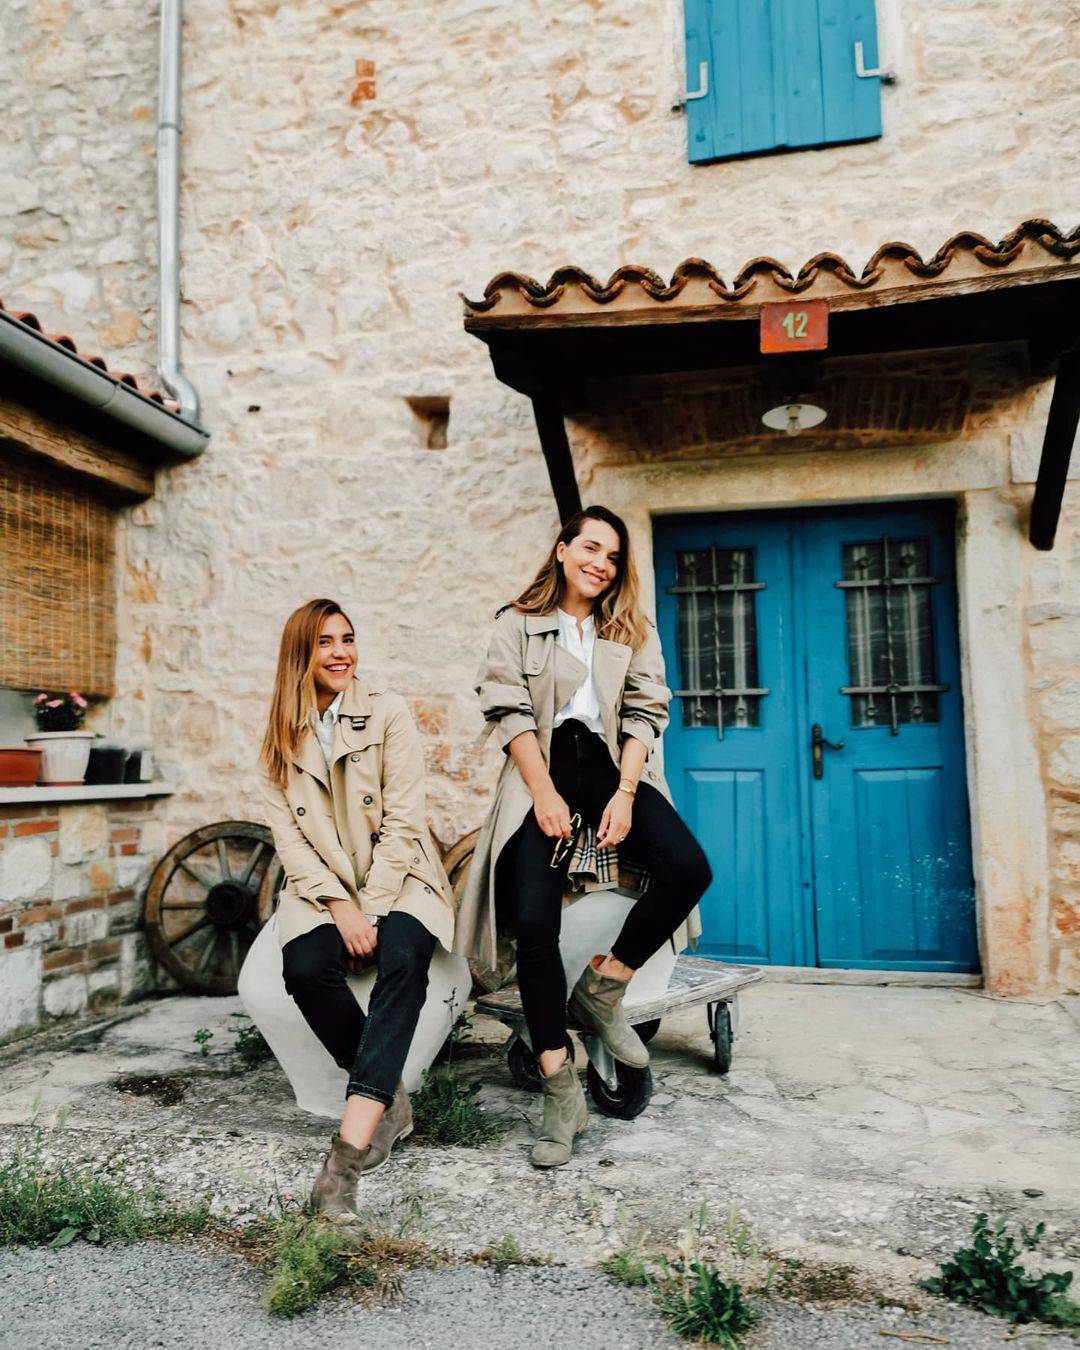 Marijana Batinić zbunila svoje pratitelje fotkom sa sestrom: 'Predivne ste, ali koja je koja?'